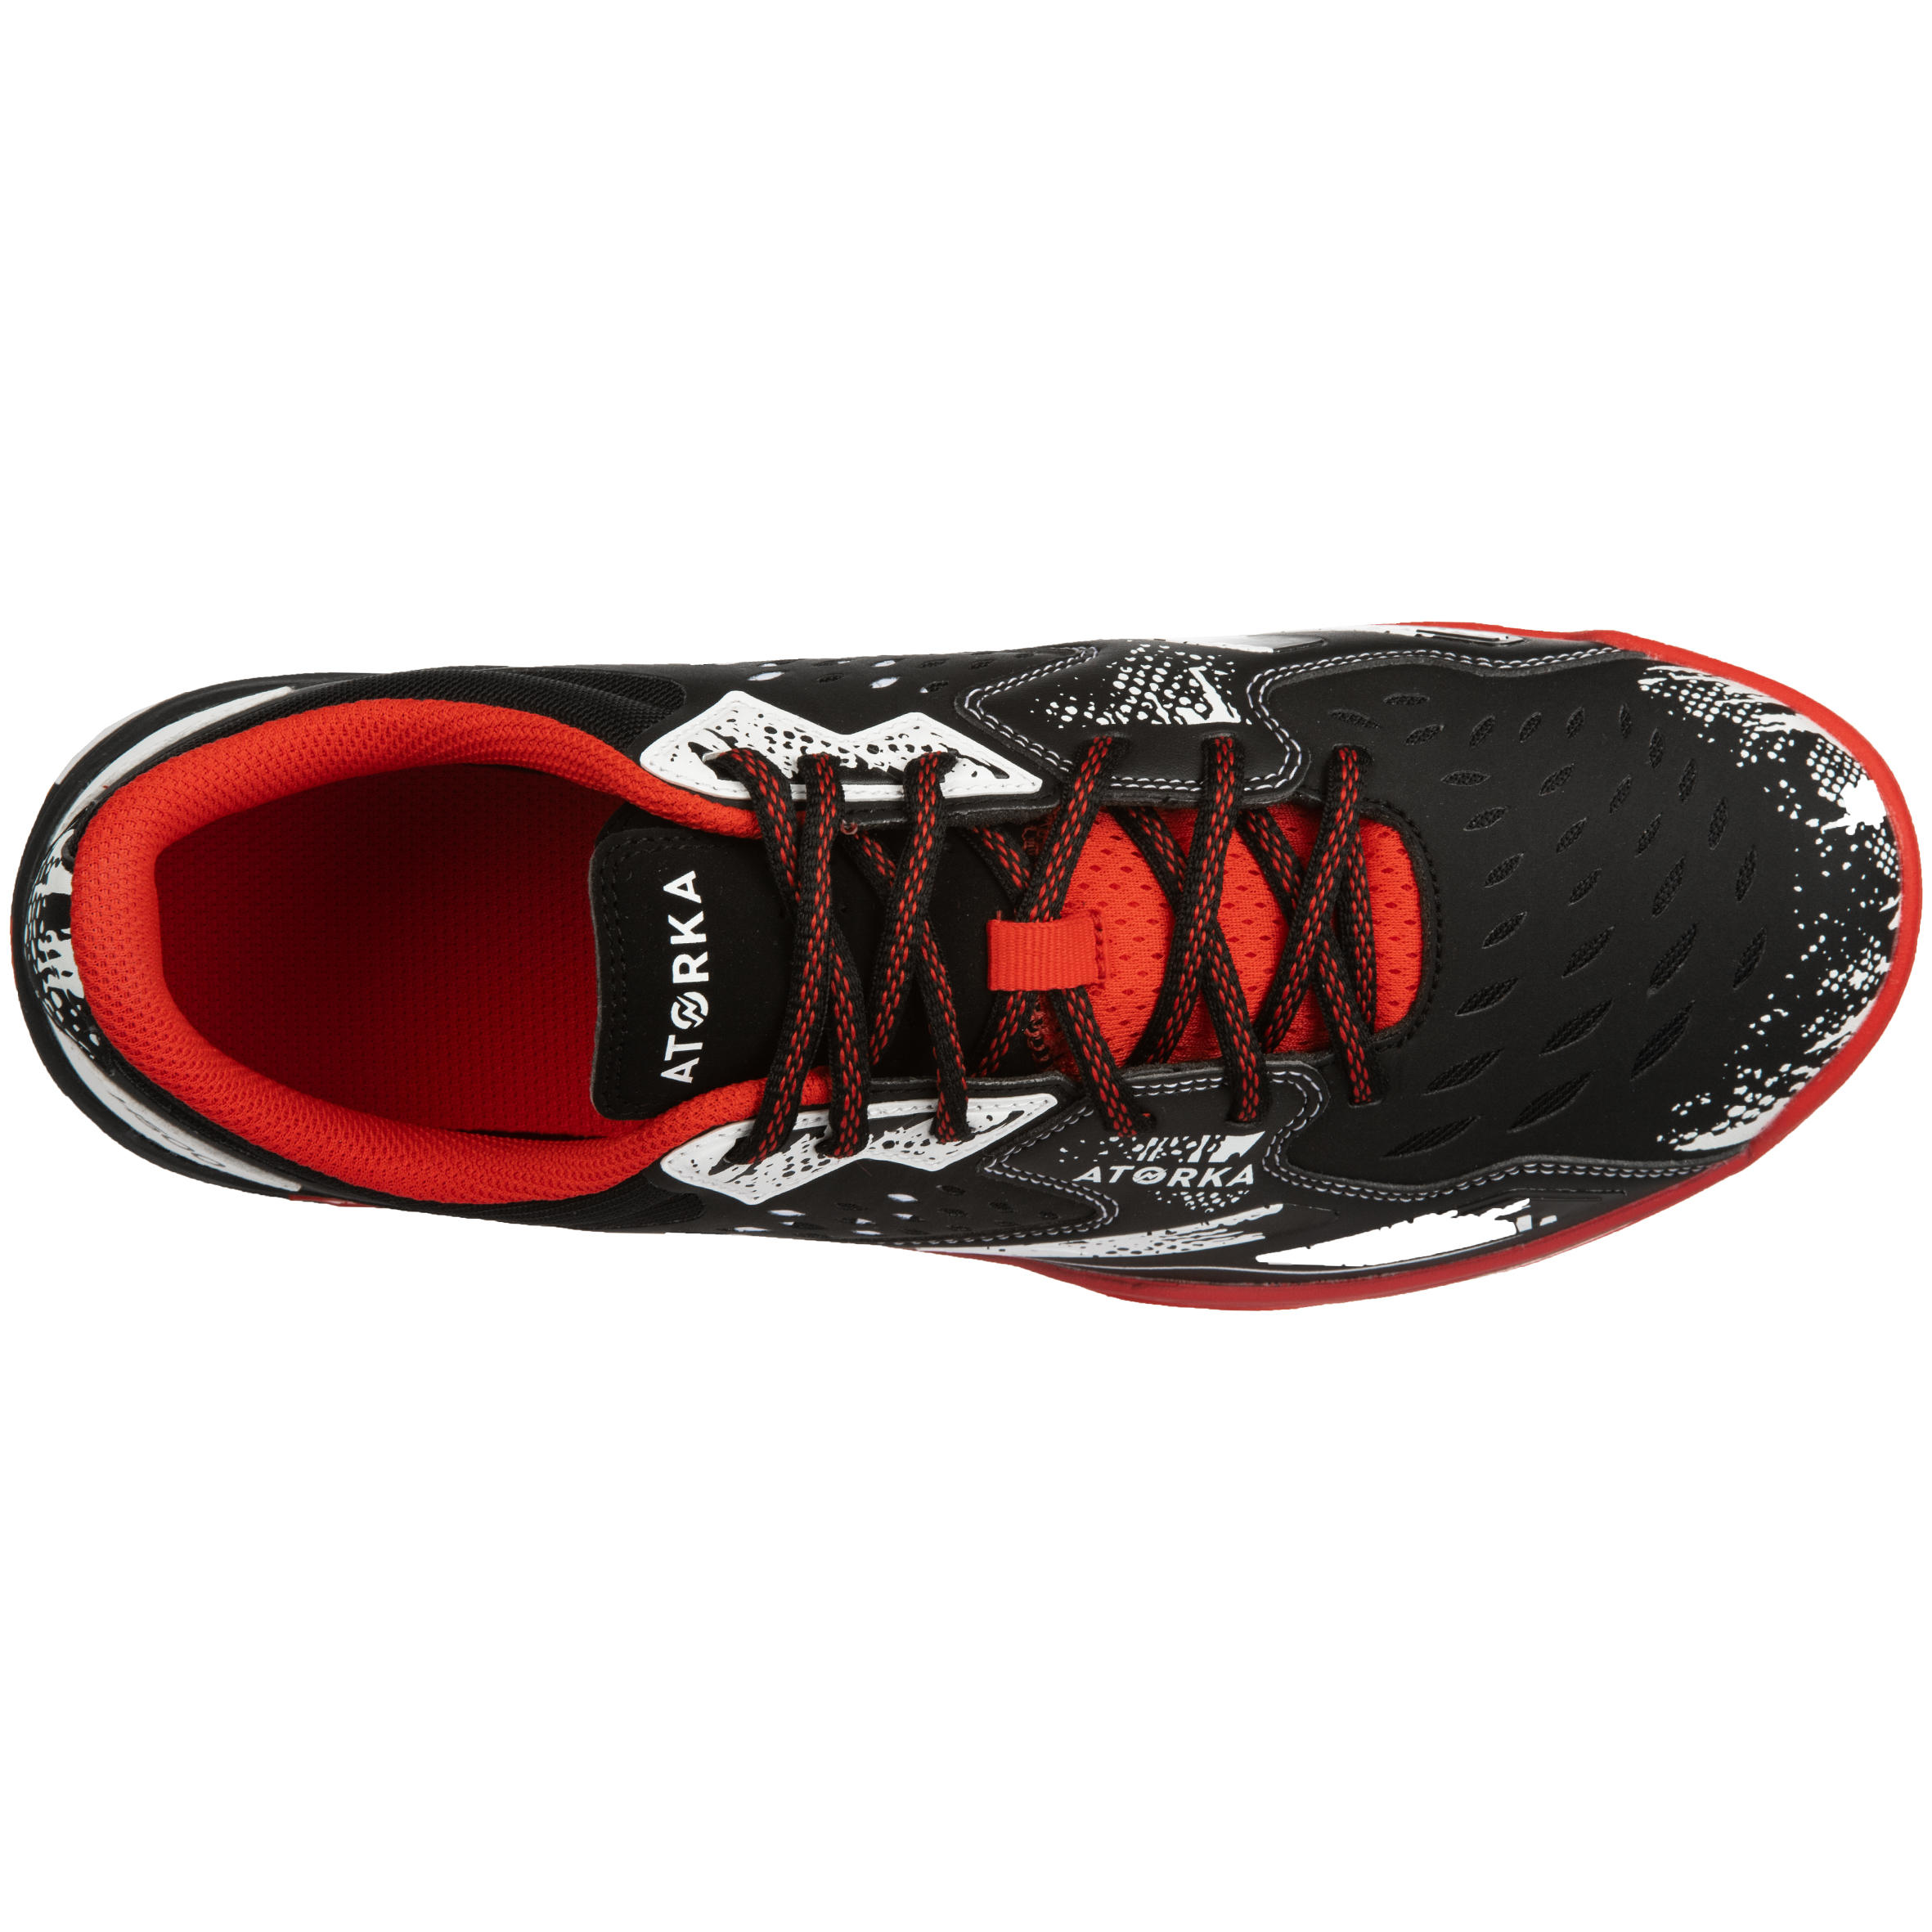 H500 Handball Shoes - Black/Red/White 4/9